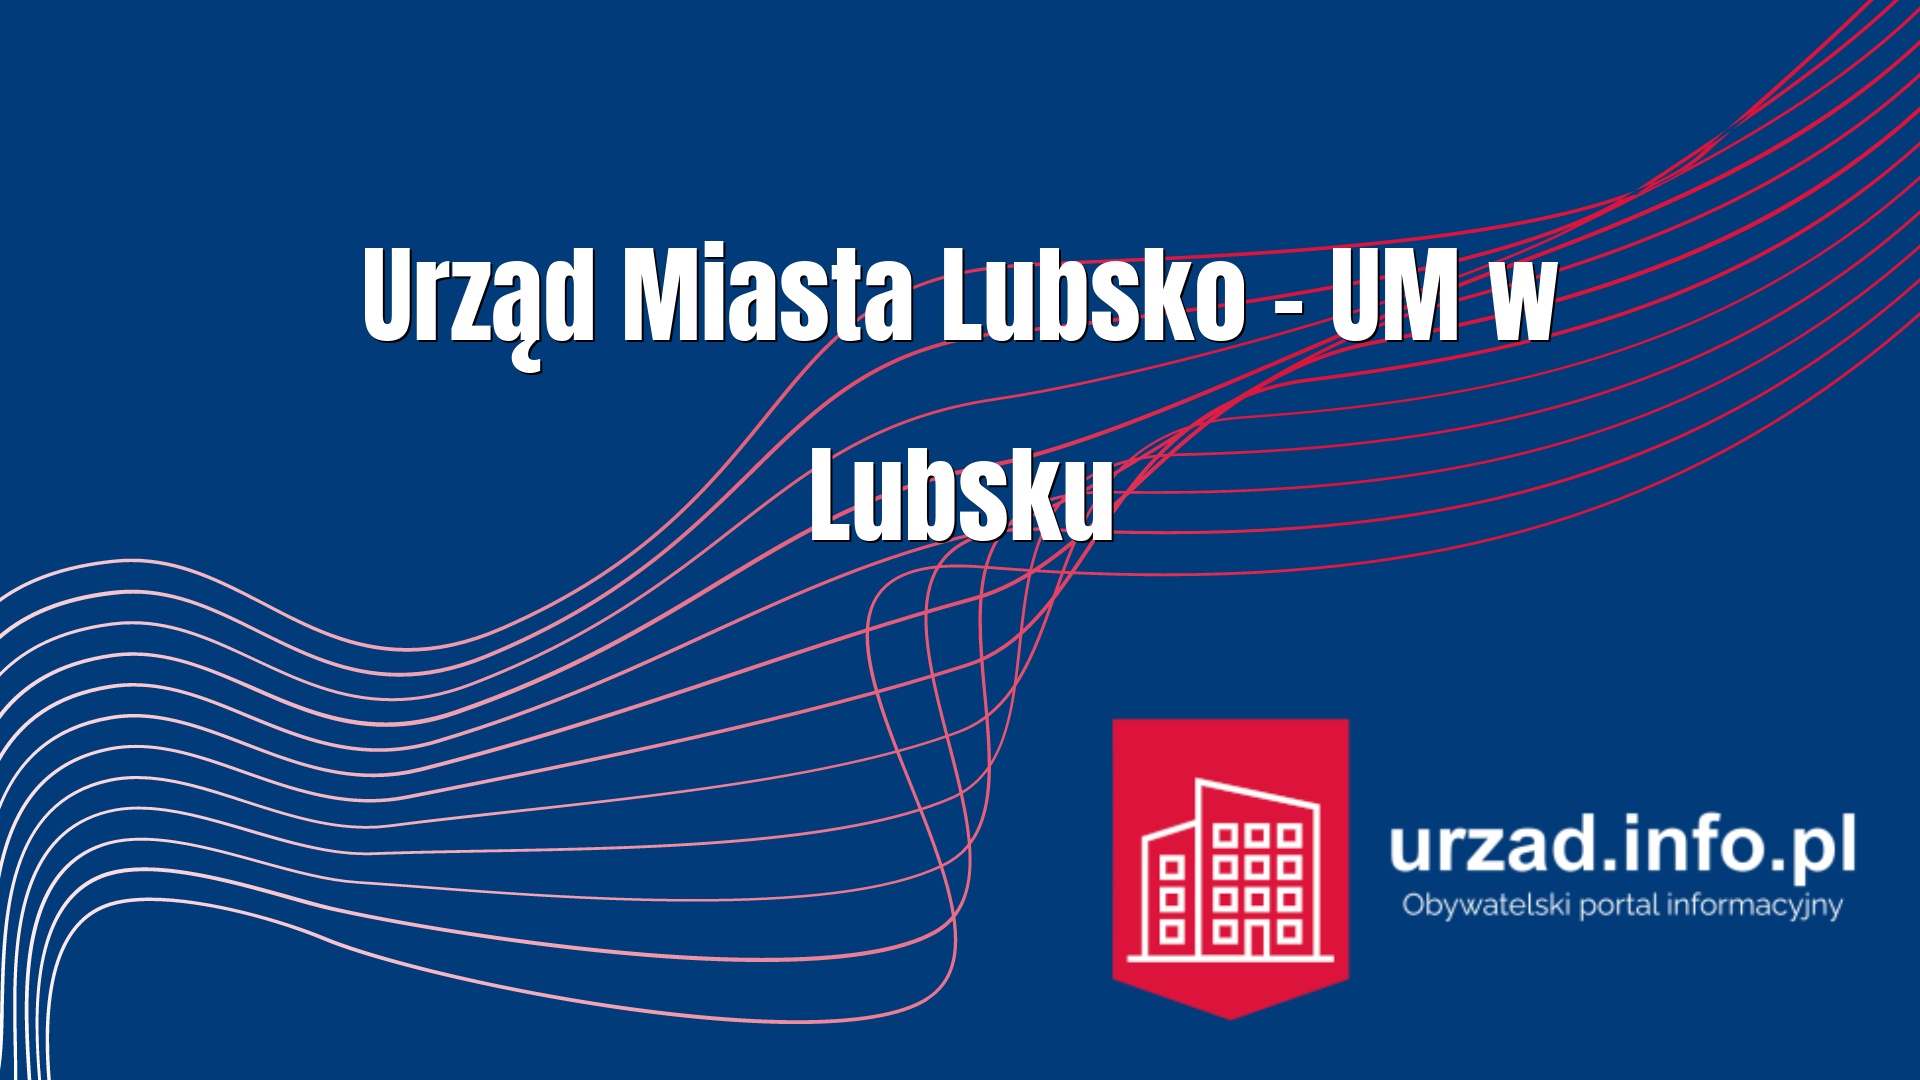 Urząd Miasta Lubsko – UM w Lubsku